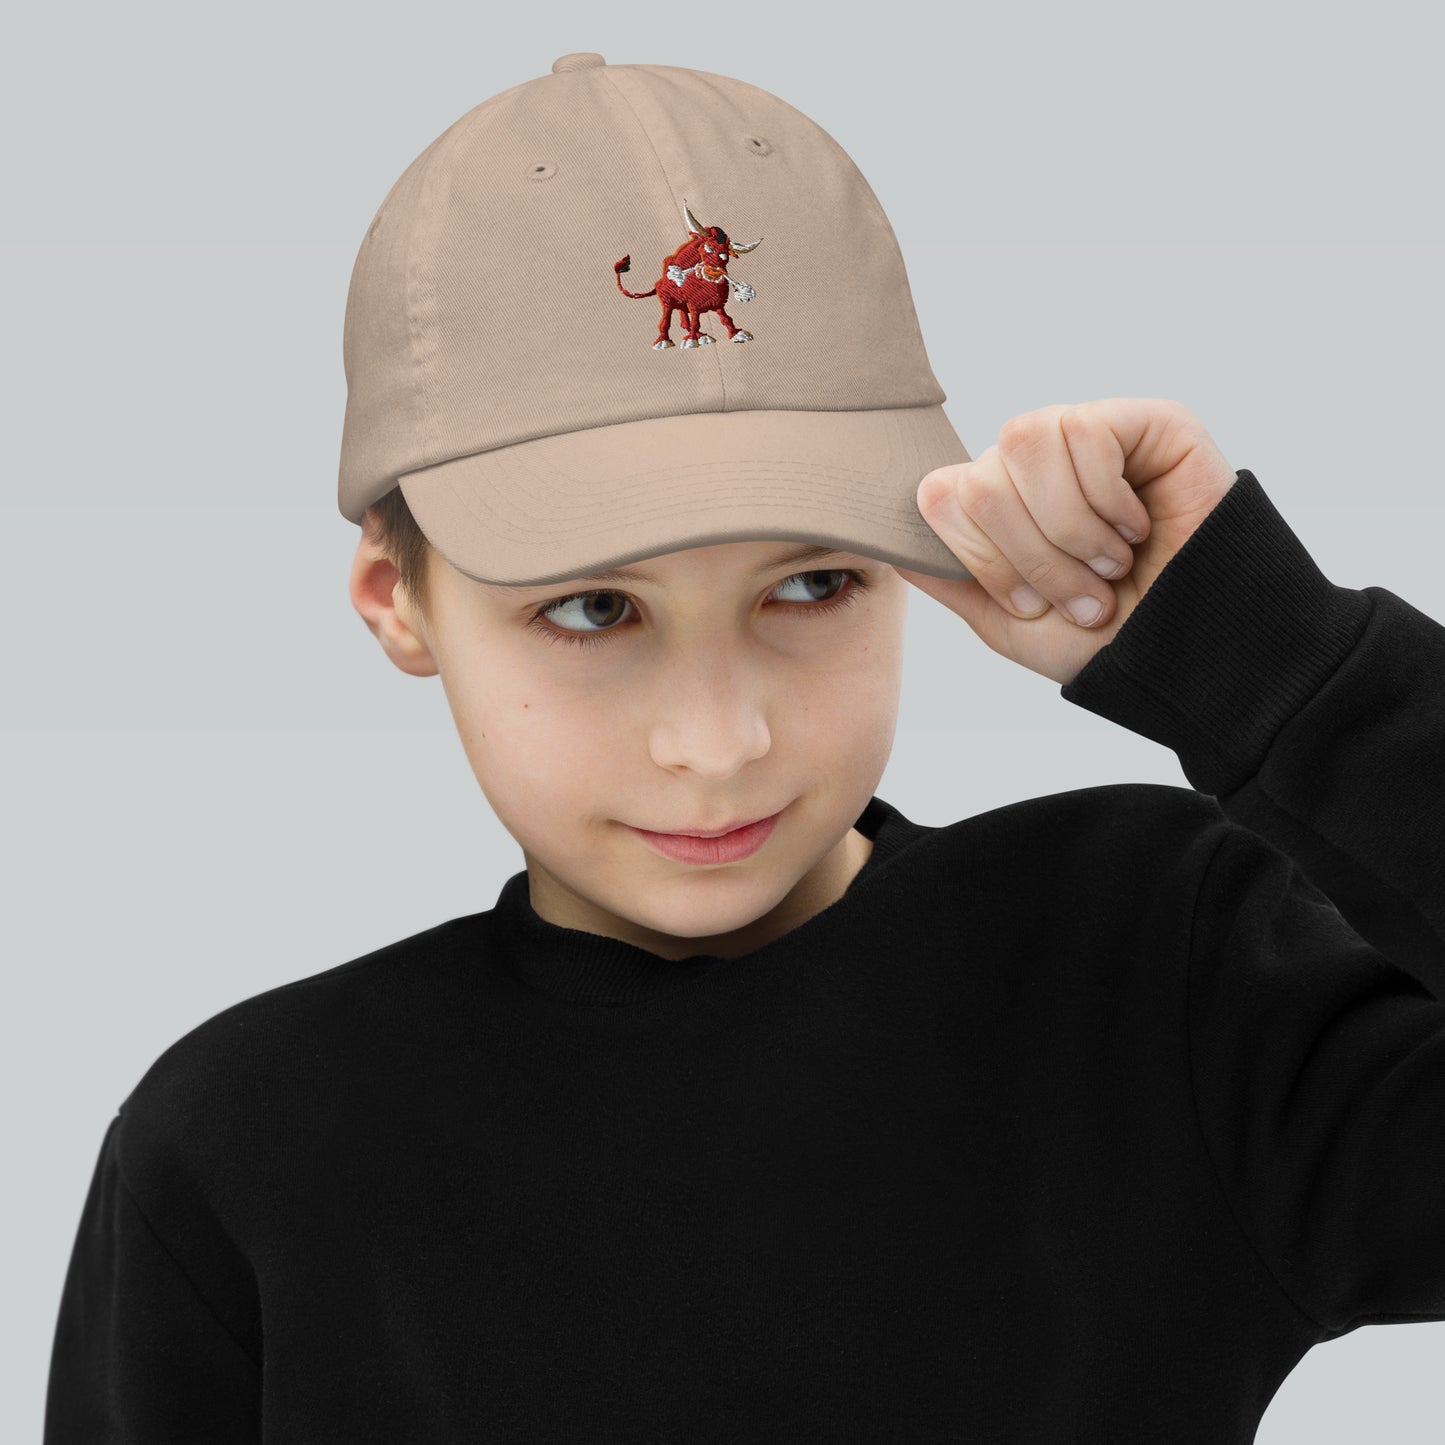 "Bull" Youth baseball cap